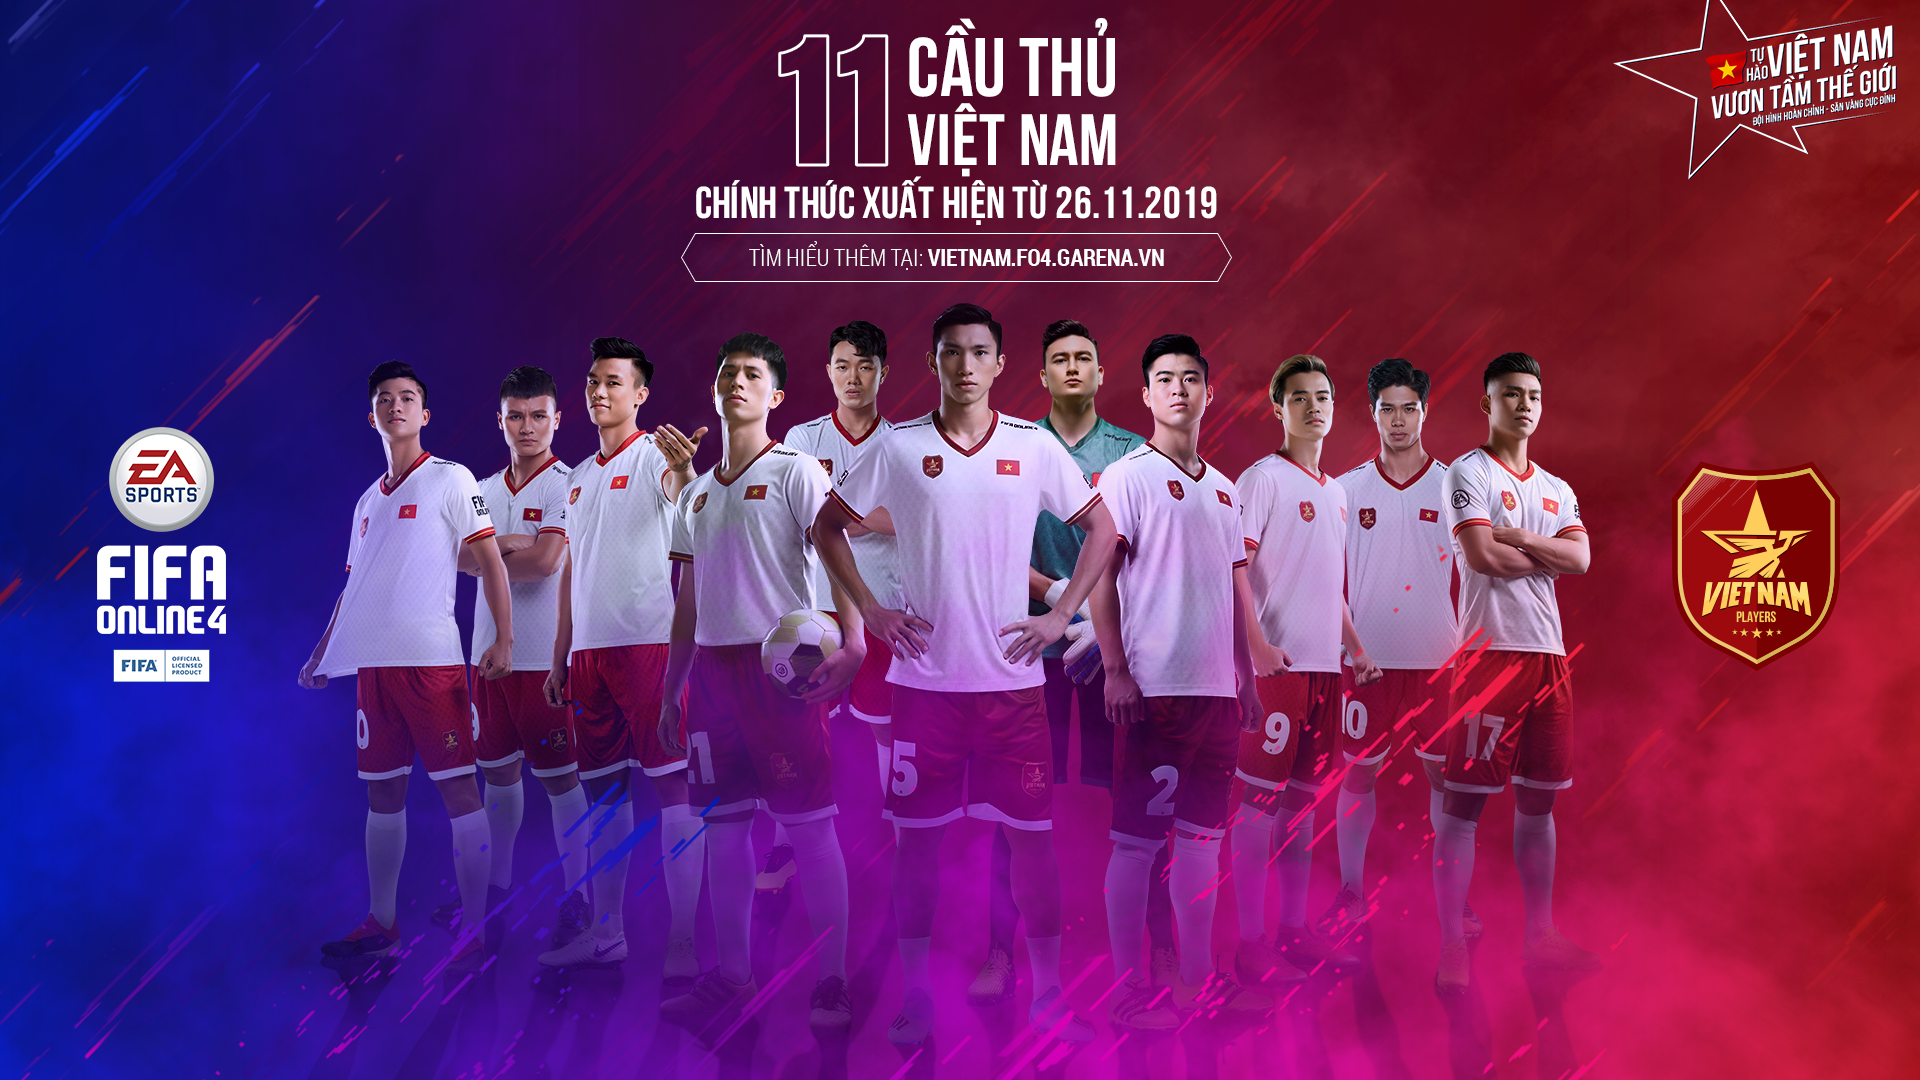 FIFA Online 4 Việt Nam  Bộ ba Quang Hải  Xuân Trường  Công Phượng chính  thức có mặt trong FIFA Online 4 Việt Nam